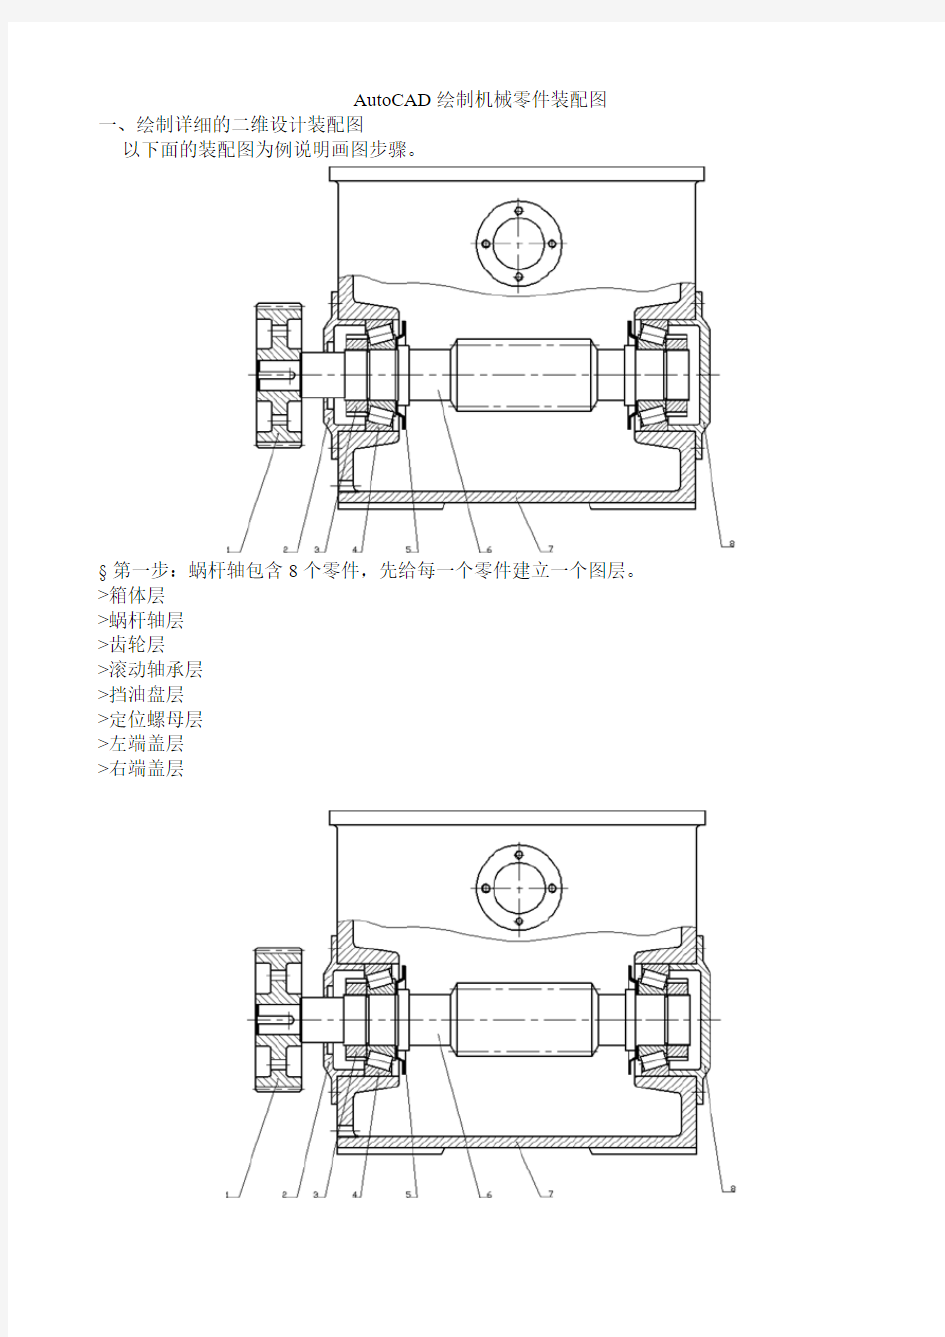 AutoCAD绘制机械零件装配图